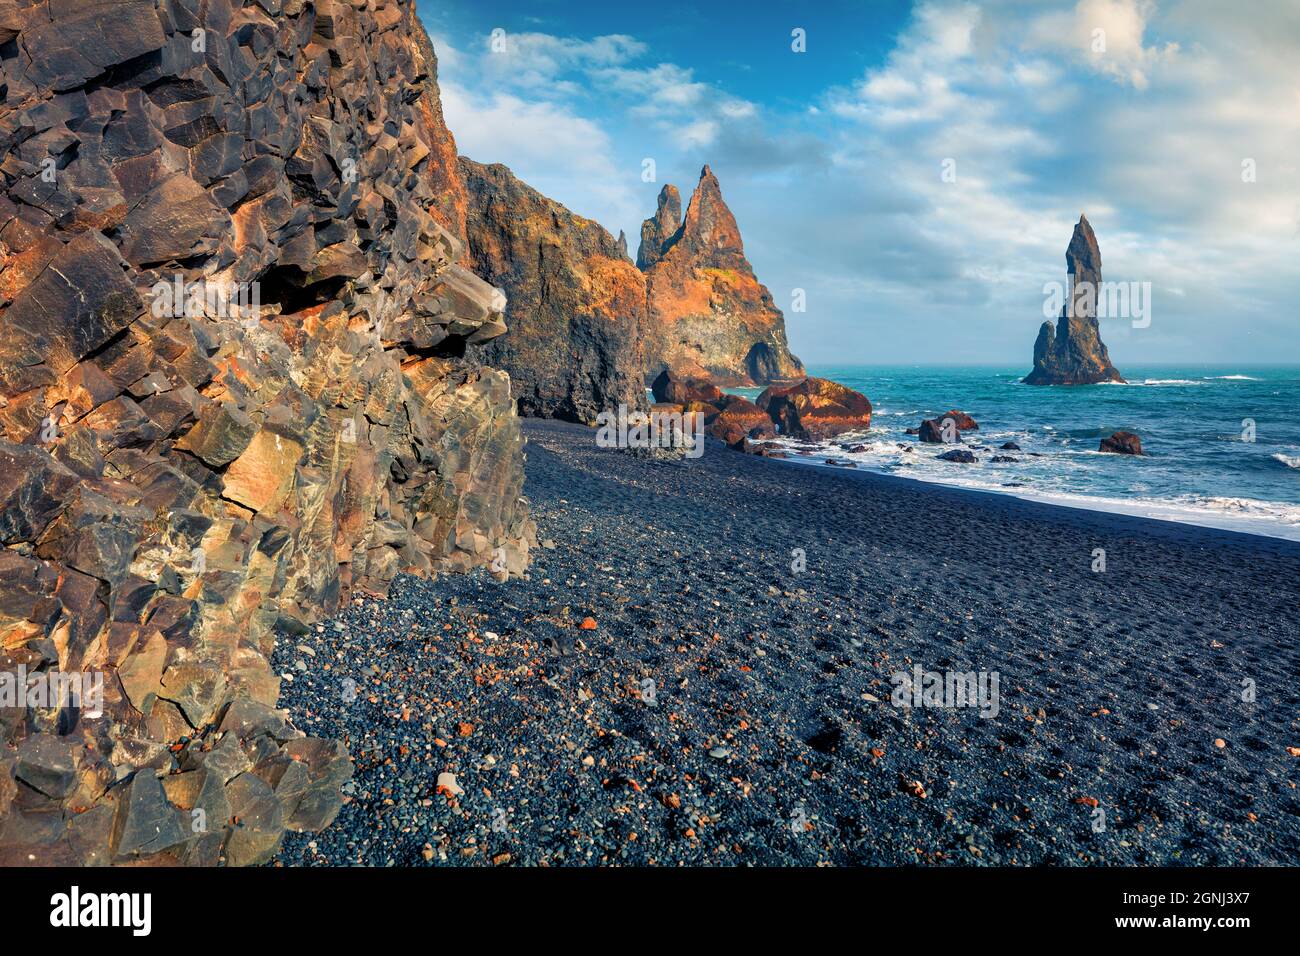 Gefrorene sechseckige Basaltsäulen an der Atlantikküste. Schwarzer Sandstrand und Reynisdrangar-Klippen. Dramatische Sommerszene von Island, Vik-Location, EUR Stockfoto